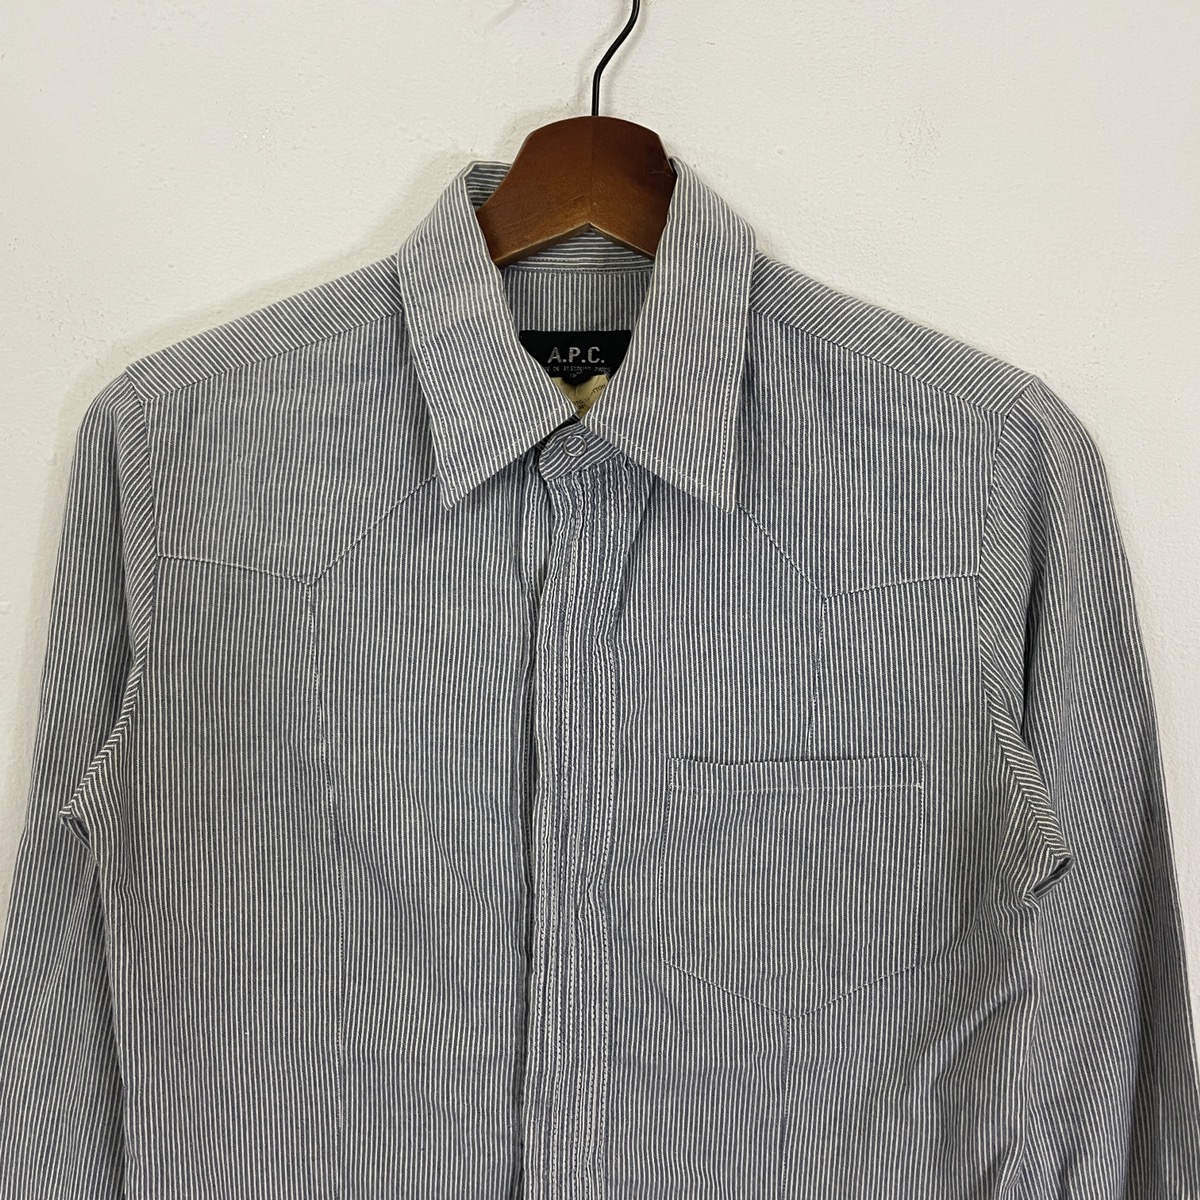 Vintage A.P.C Button Ups Women Shirt - 4